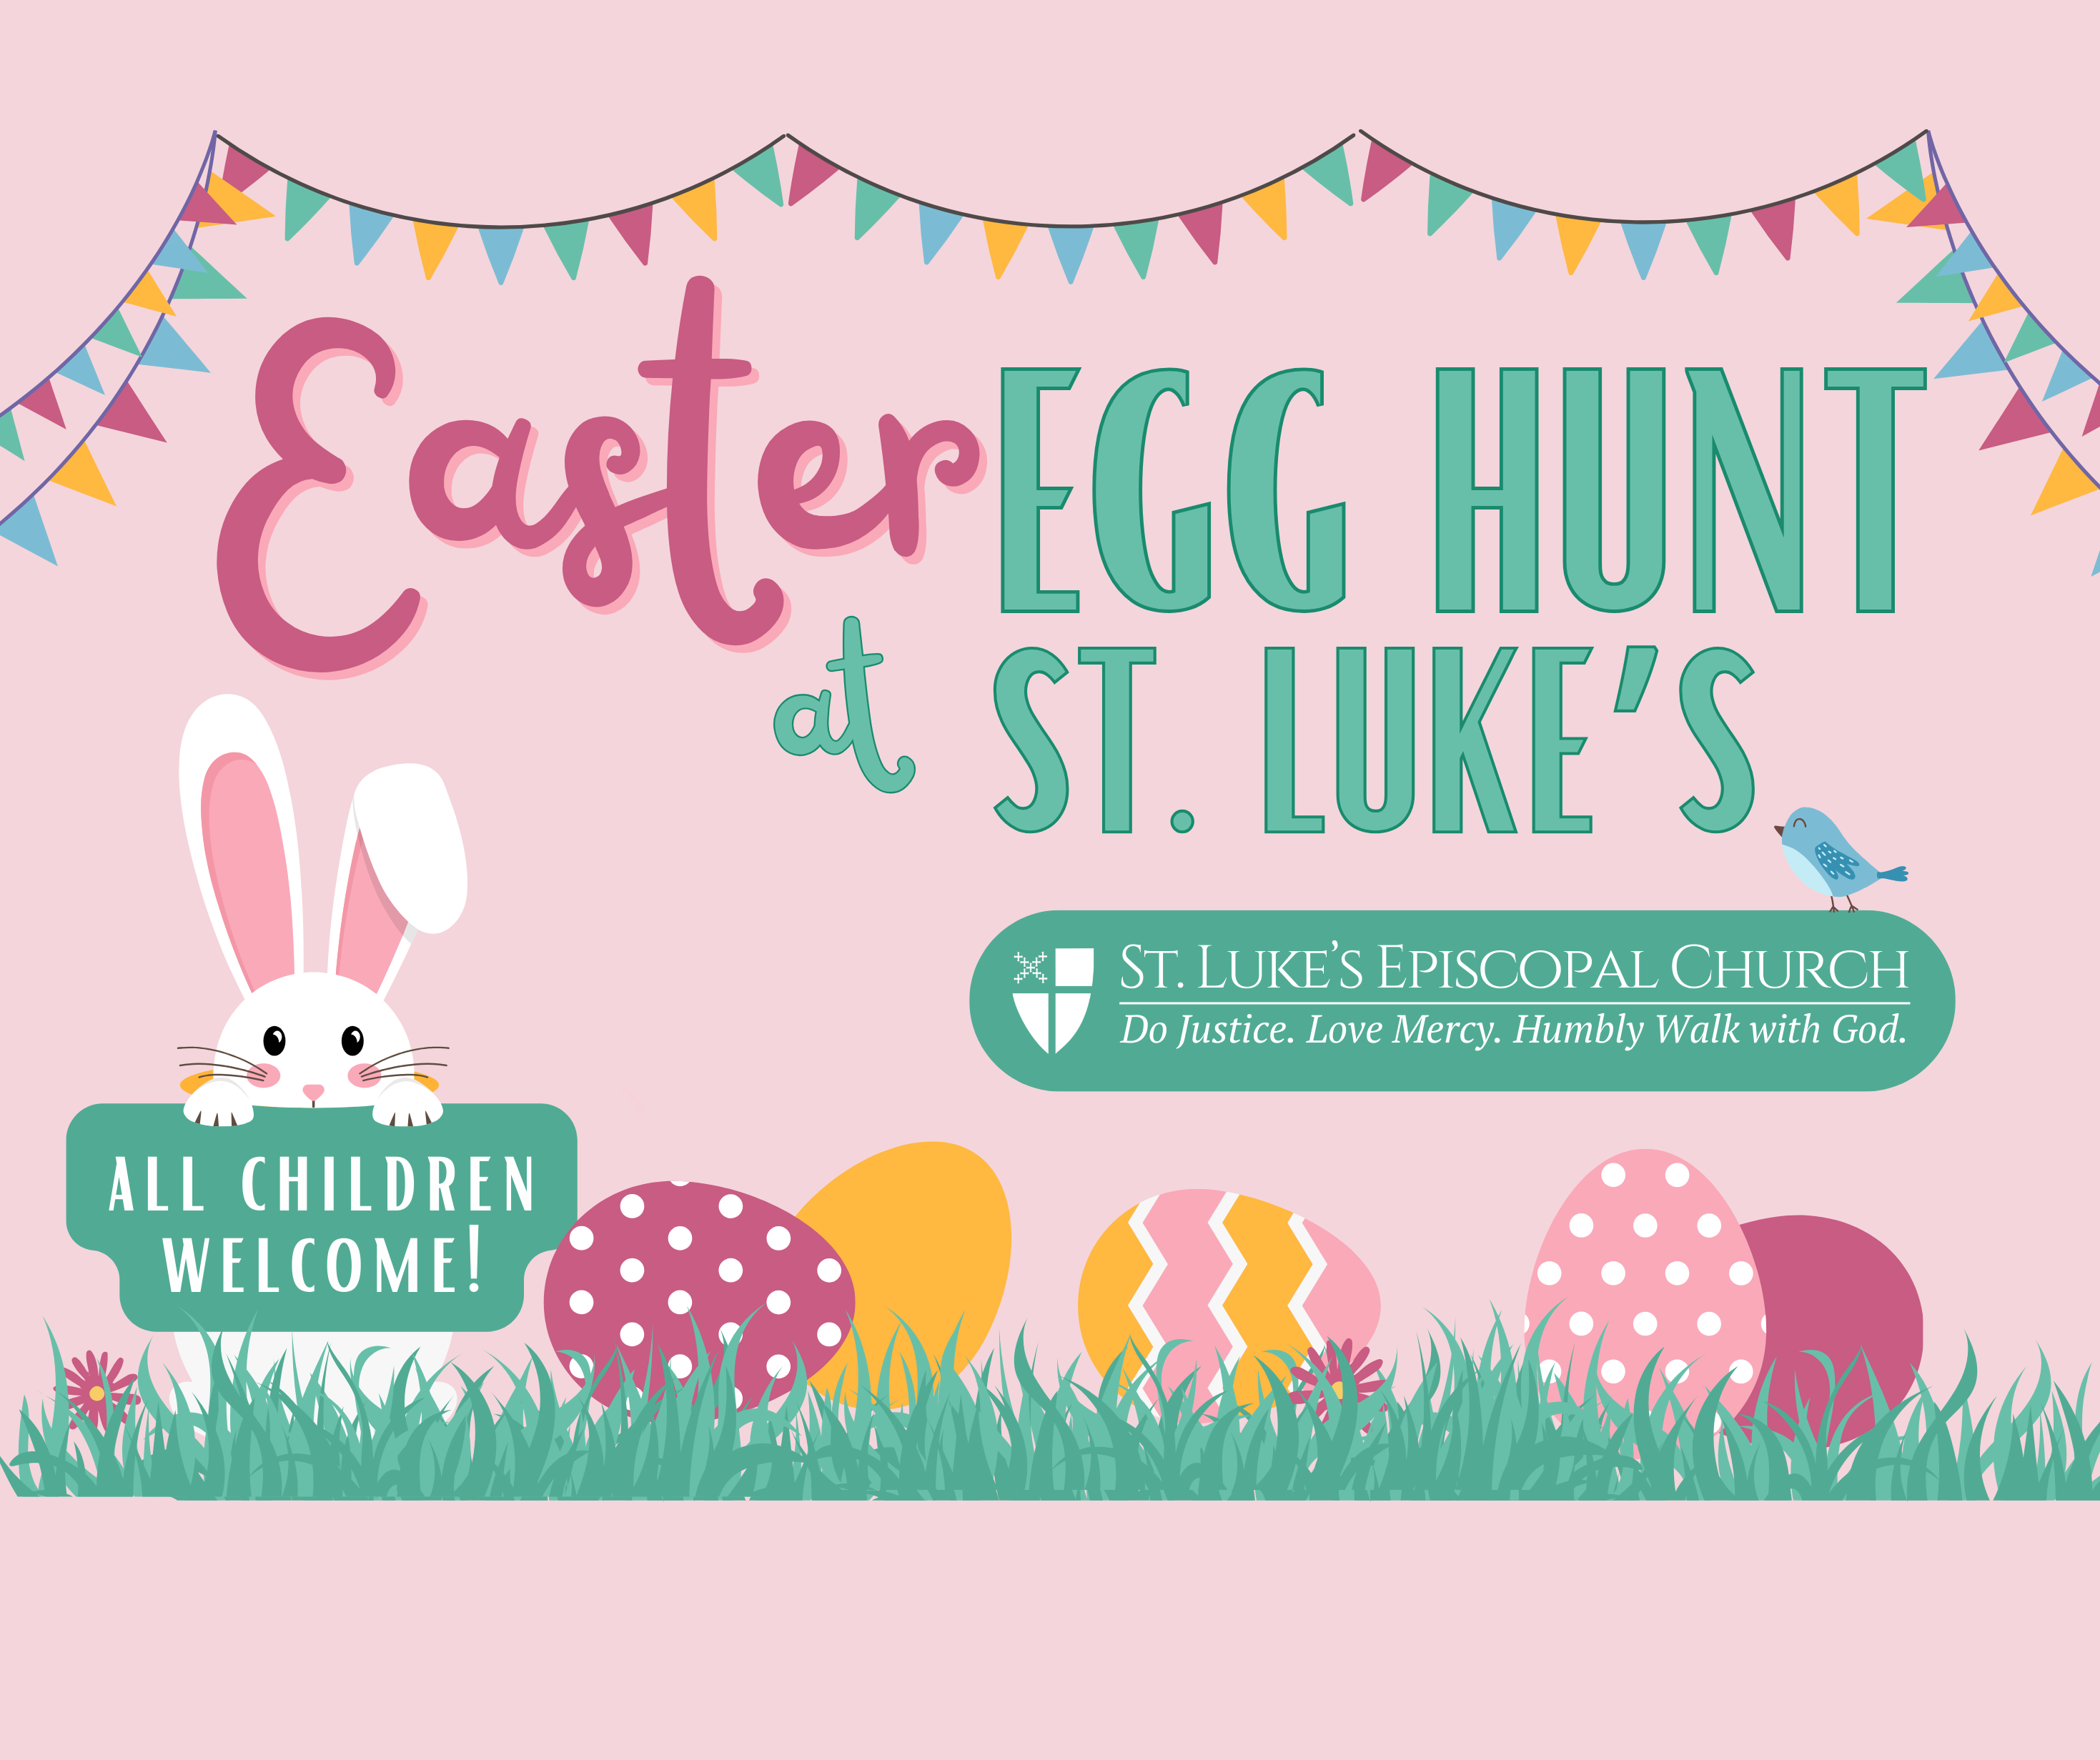 Easter egg hunt at St. Luke's all children welcome